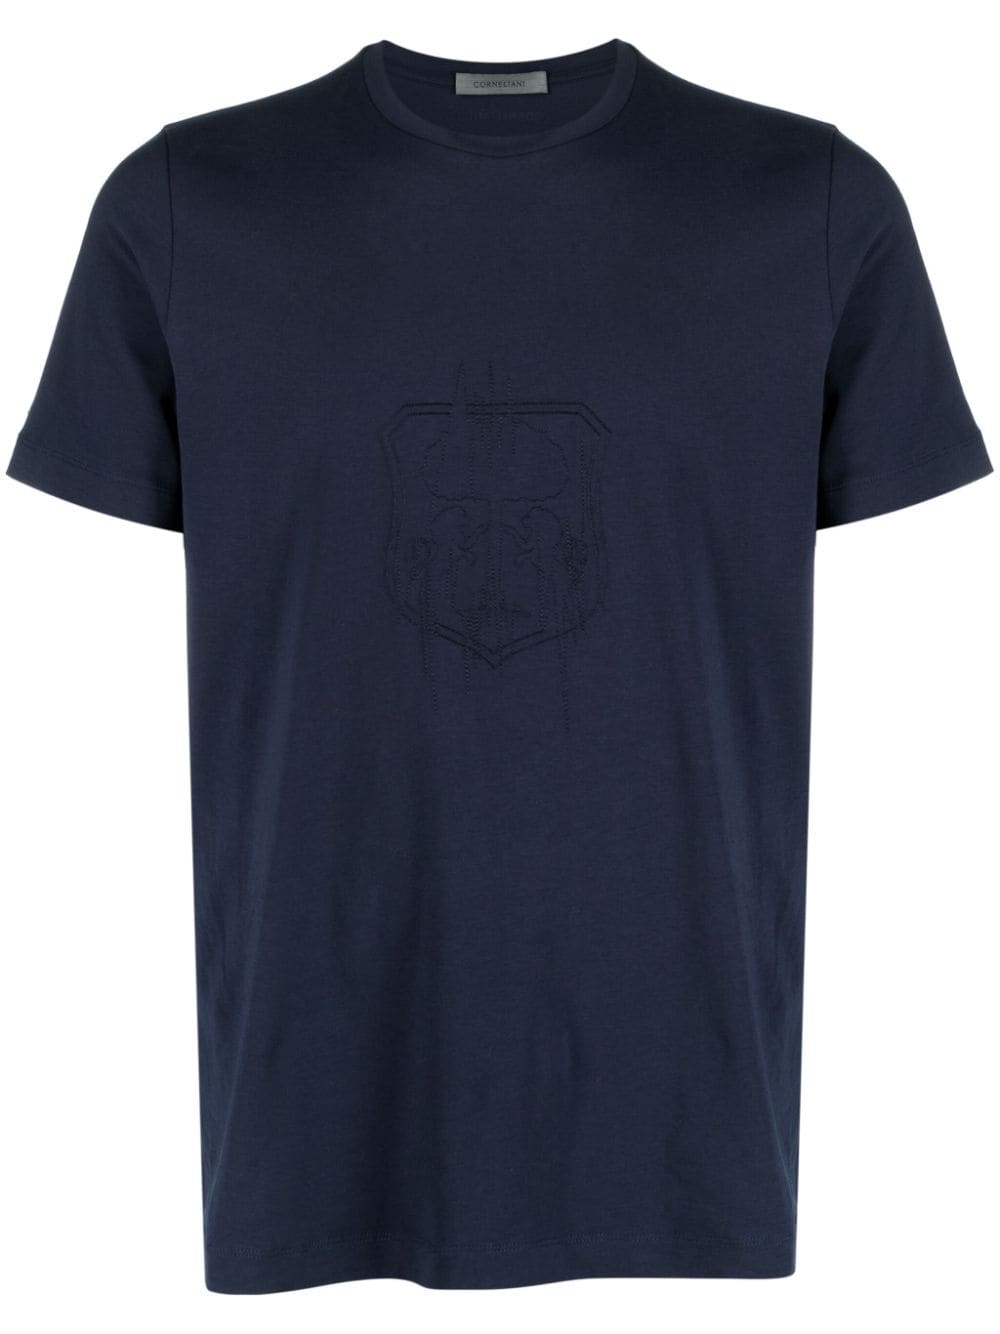 corneliani t-shirt en coton stretch à logo brodé - bleu